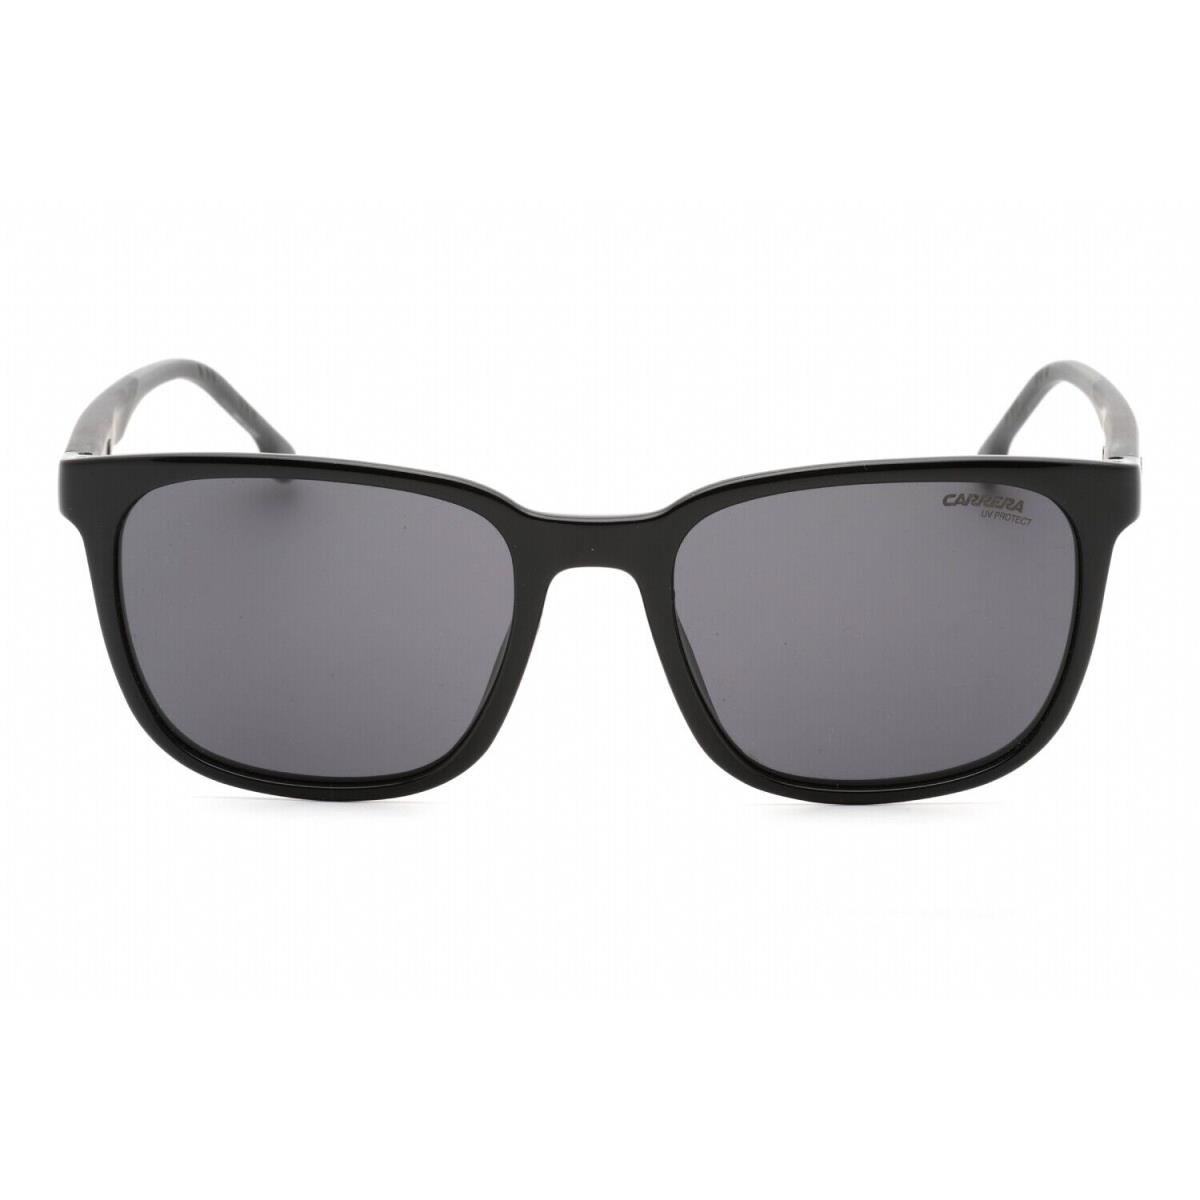 Carrera CA8046S-807IR-54 Sunglasses Size 54mm 145mm 19mm Black Men